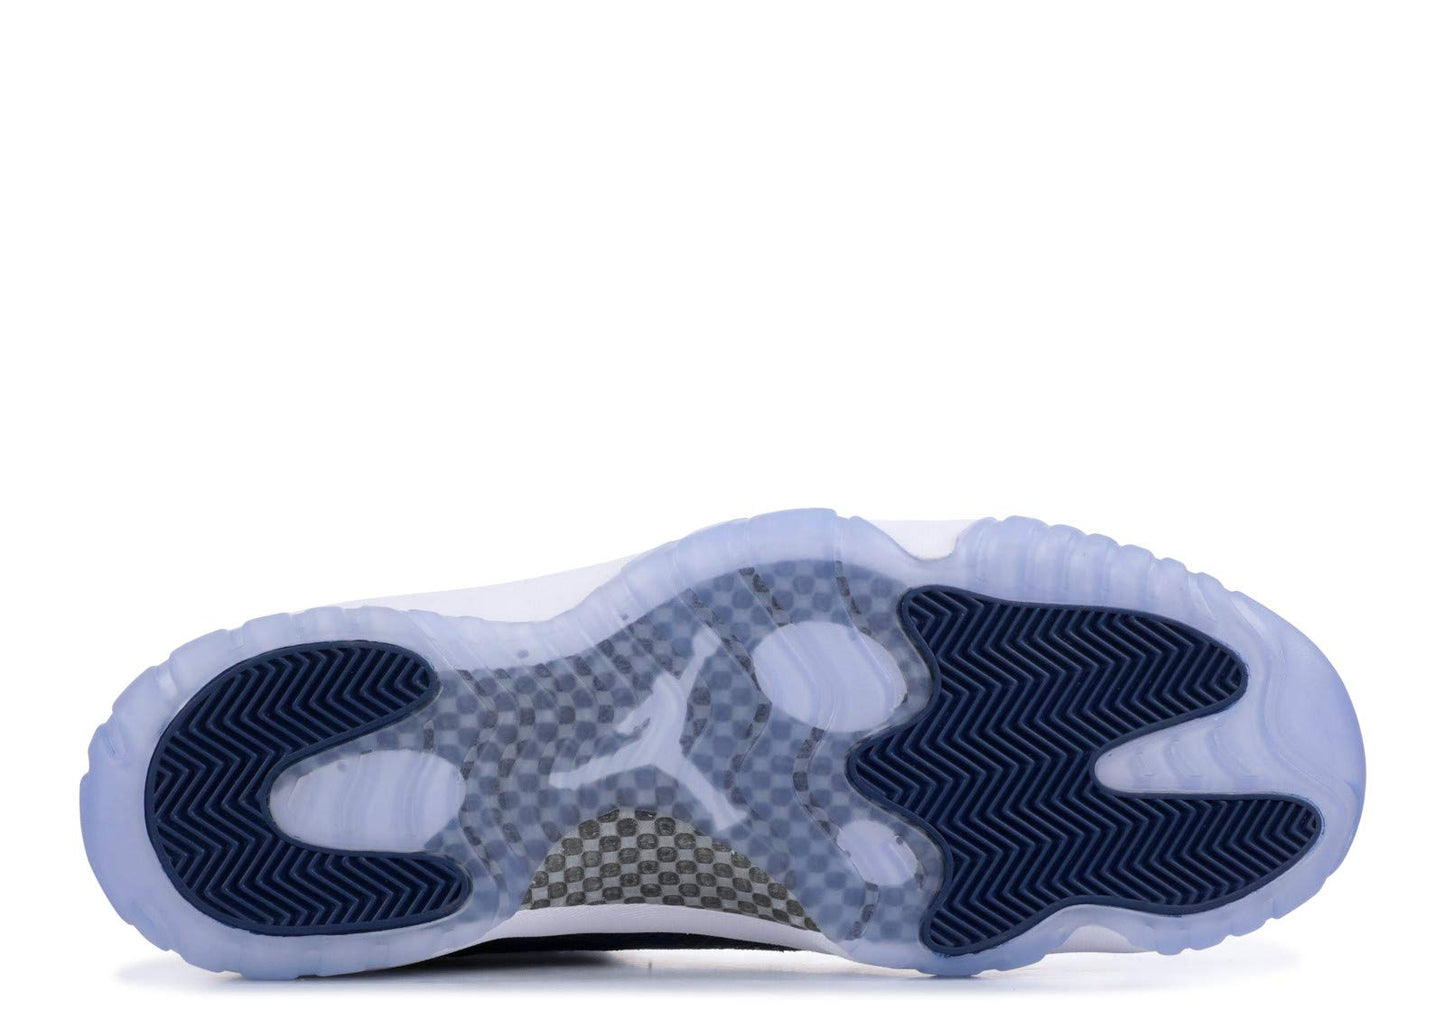 Nike Air Jordan 11 XI Retro Low Hombre Talla 13 Piel de serpiente CD6846-102 Blanco/Negro/Azul marino)